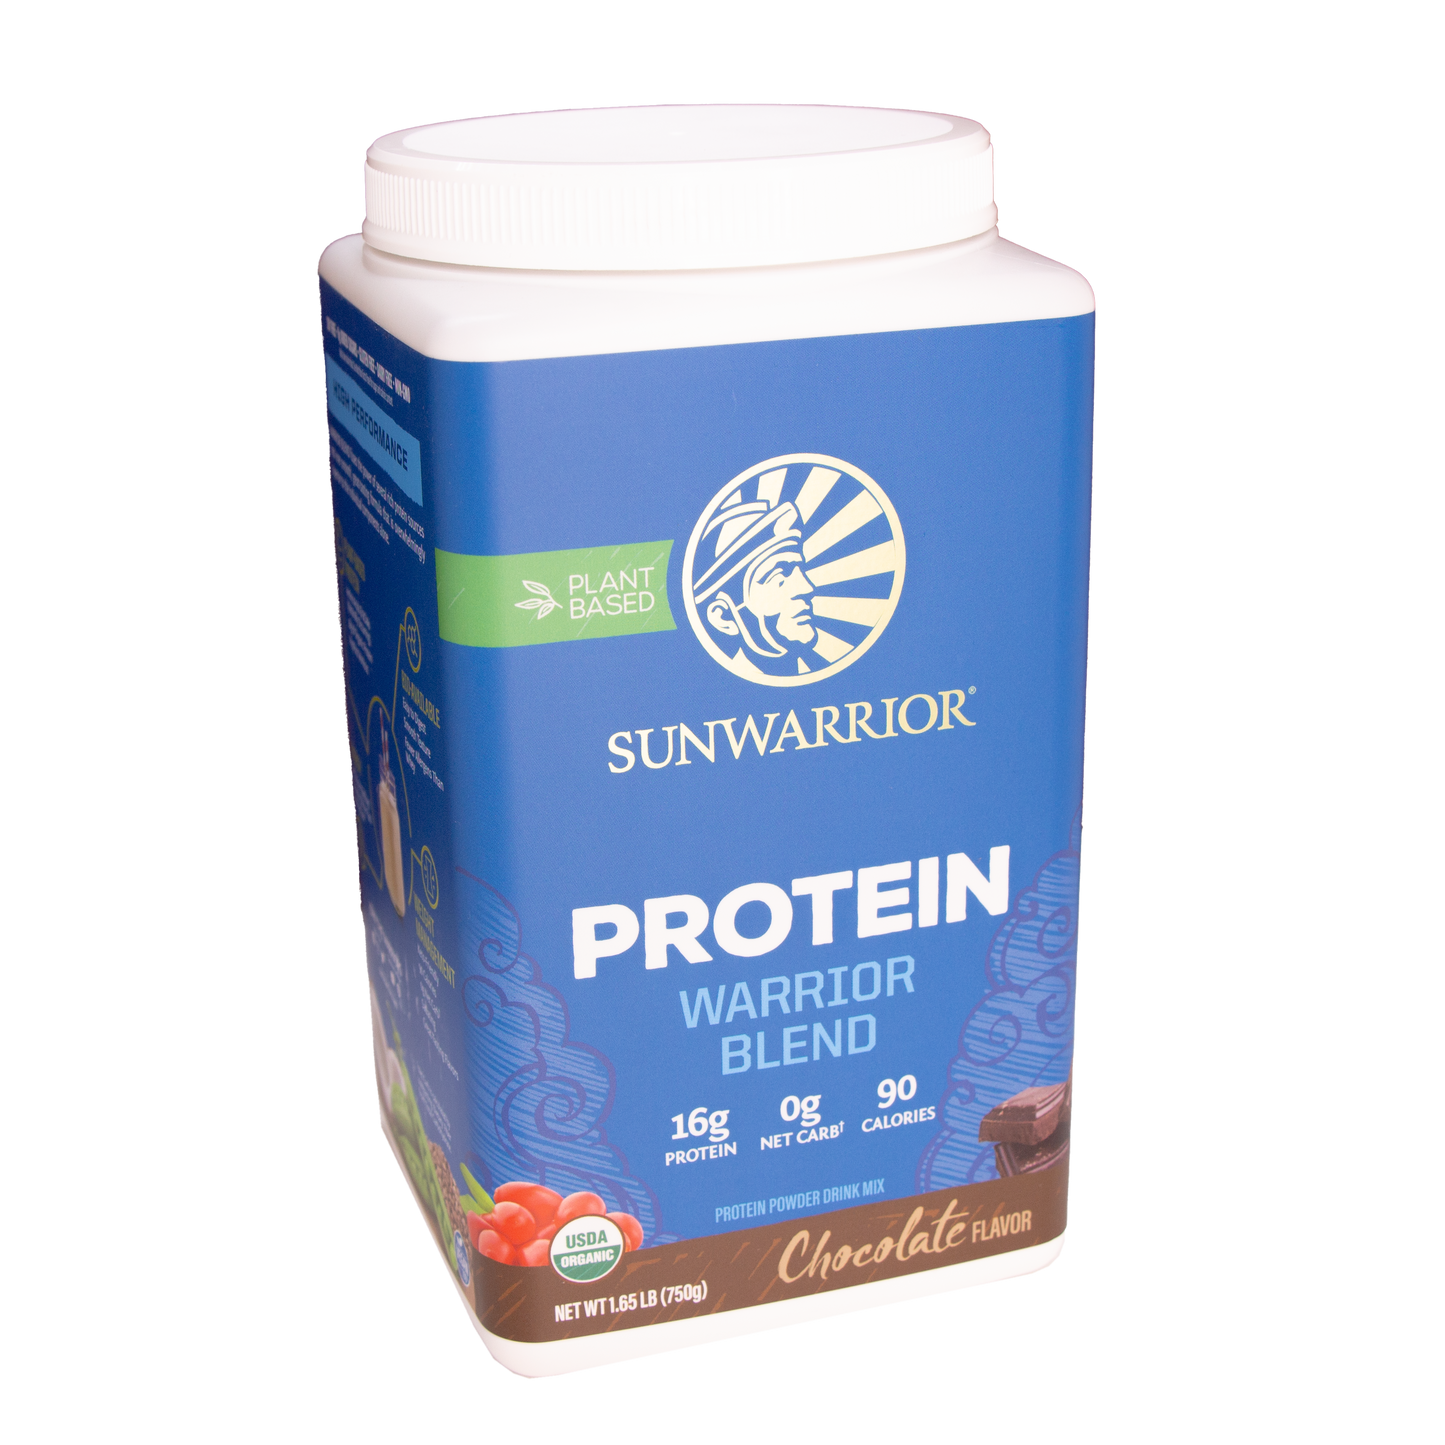 Sunwarrior Protein - Warrior Blend Chocolate (1.65 LB)